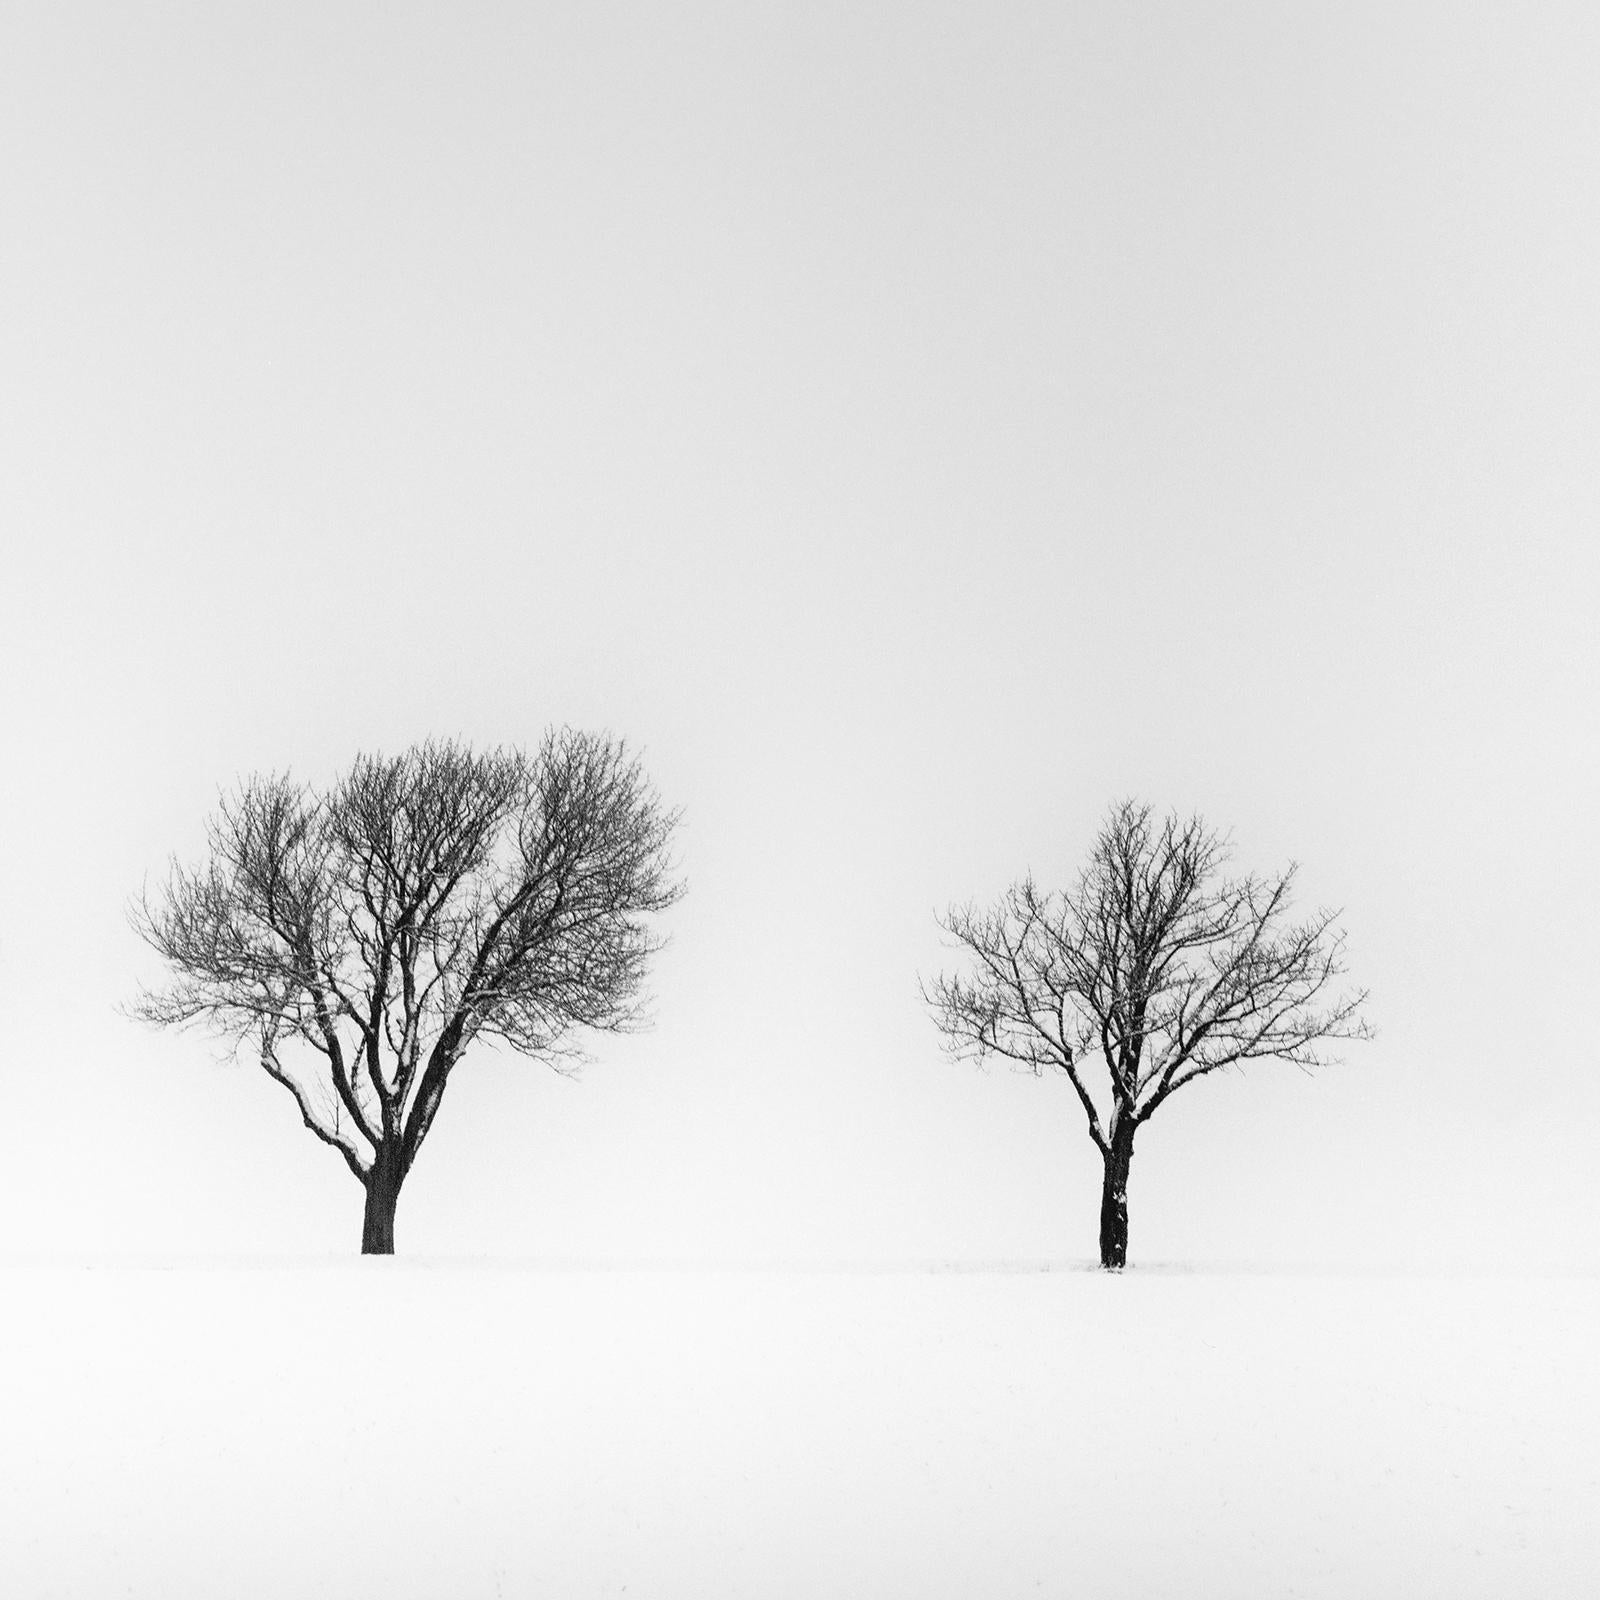 Arbres dans un champ enneigé, hiver, neige, photographie en noir et blanc, paysage en vente 5